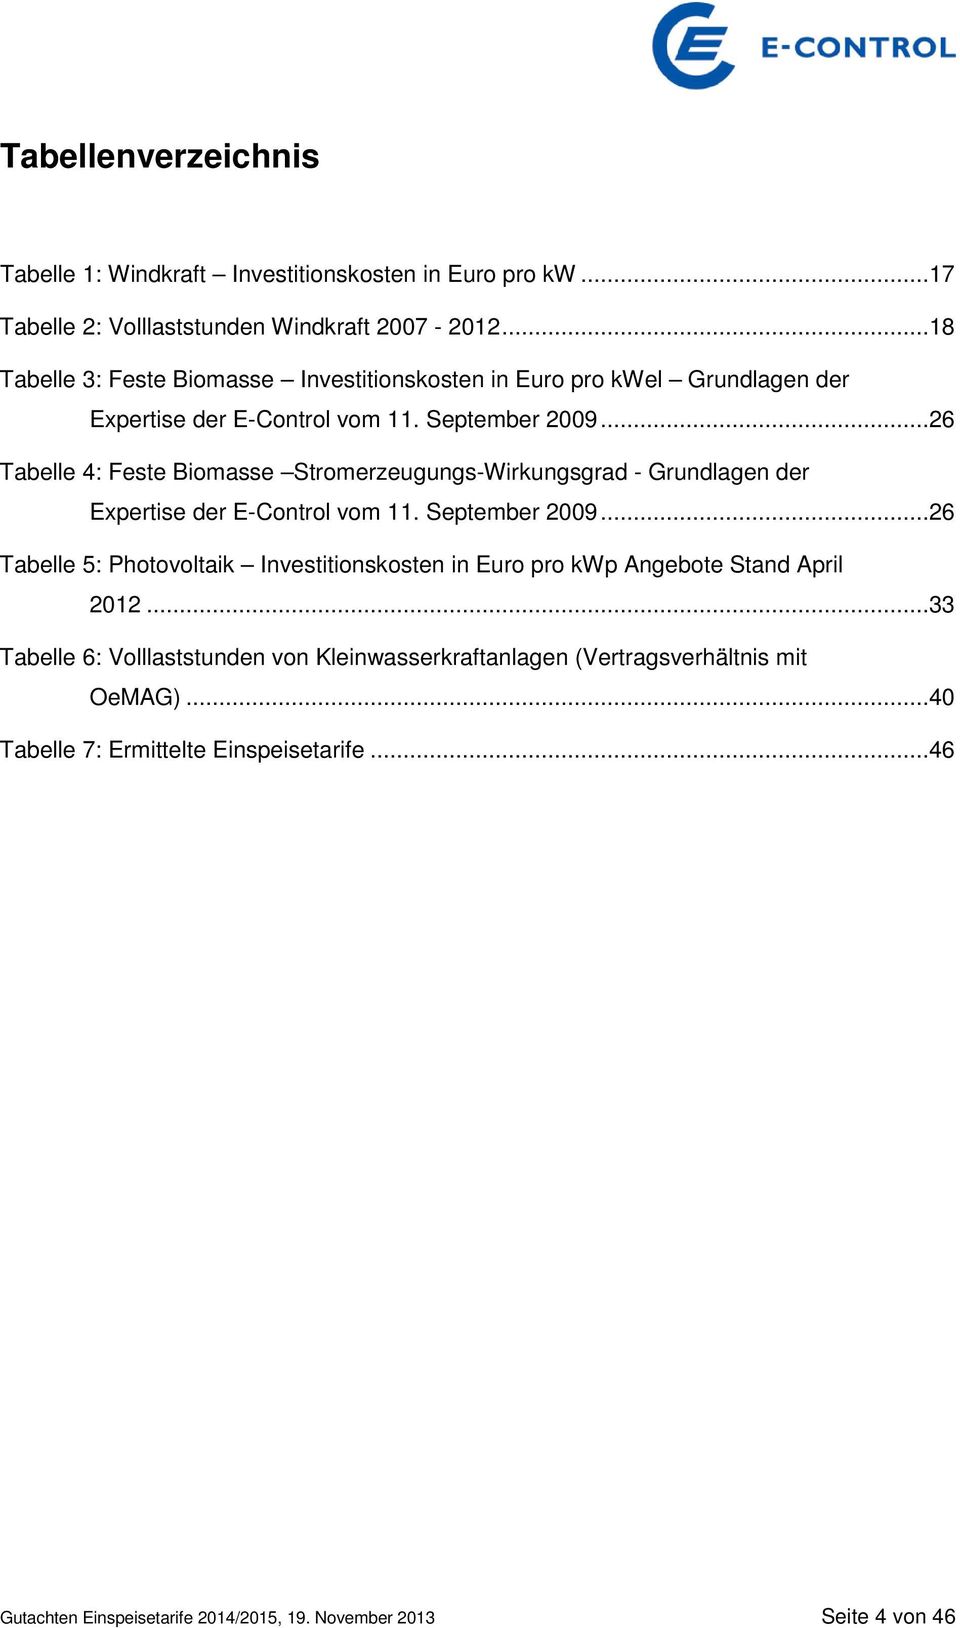 ..26 Tabelle 4: Feste Biomasse Stromerzeugungs-Wirkungsgrad - Grundlagen der Expertise der E-Control vom 11. September 2009.